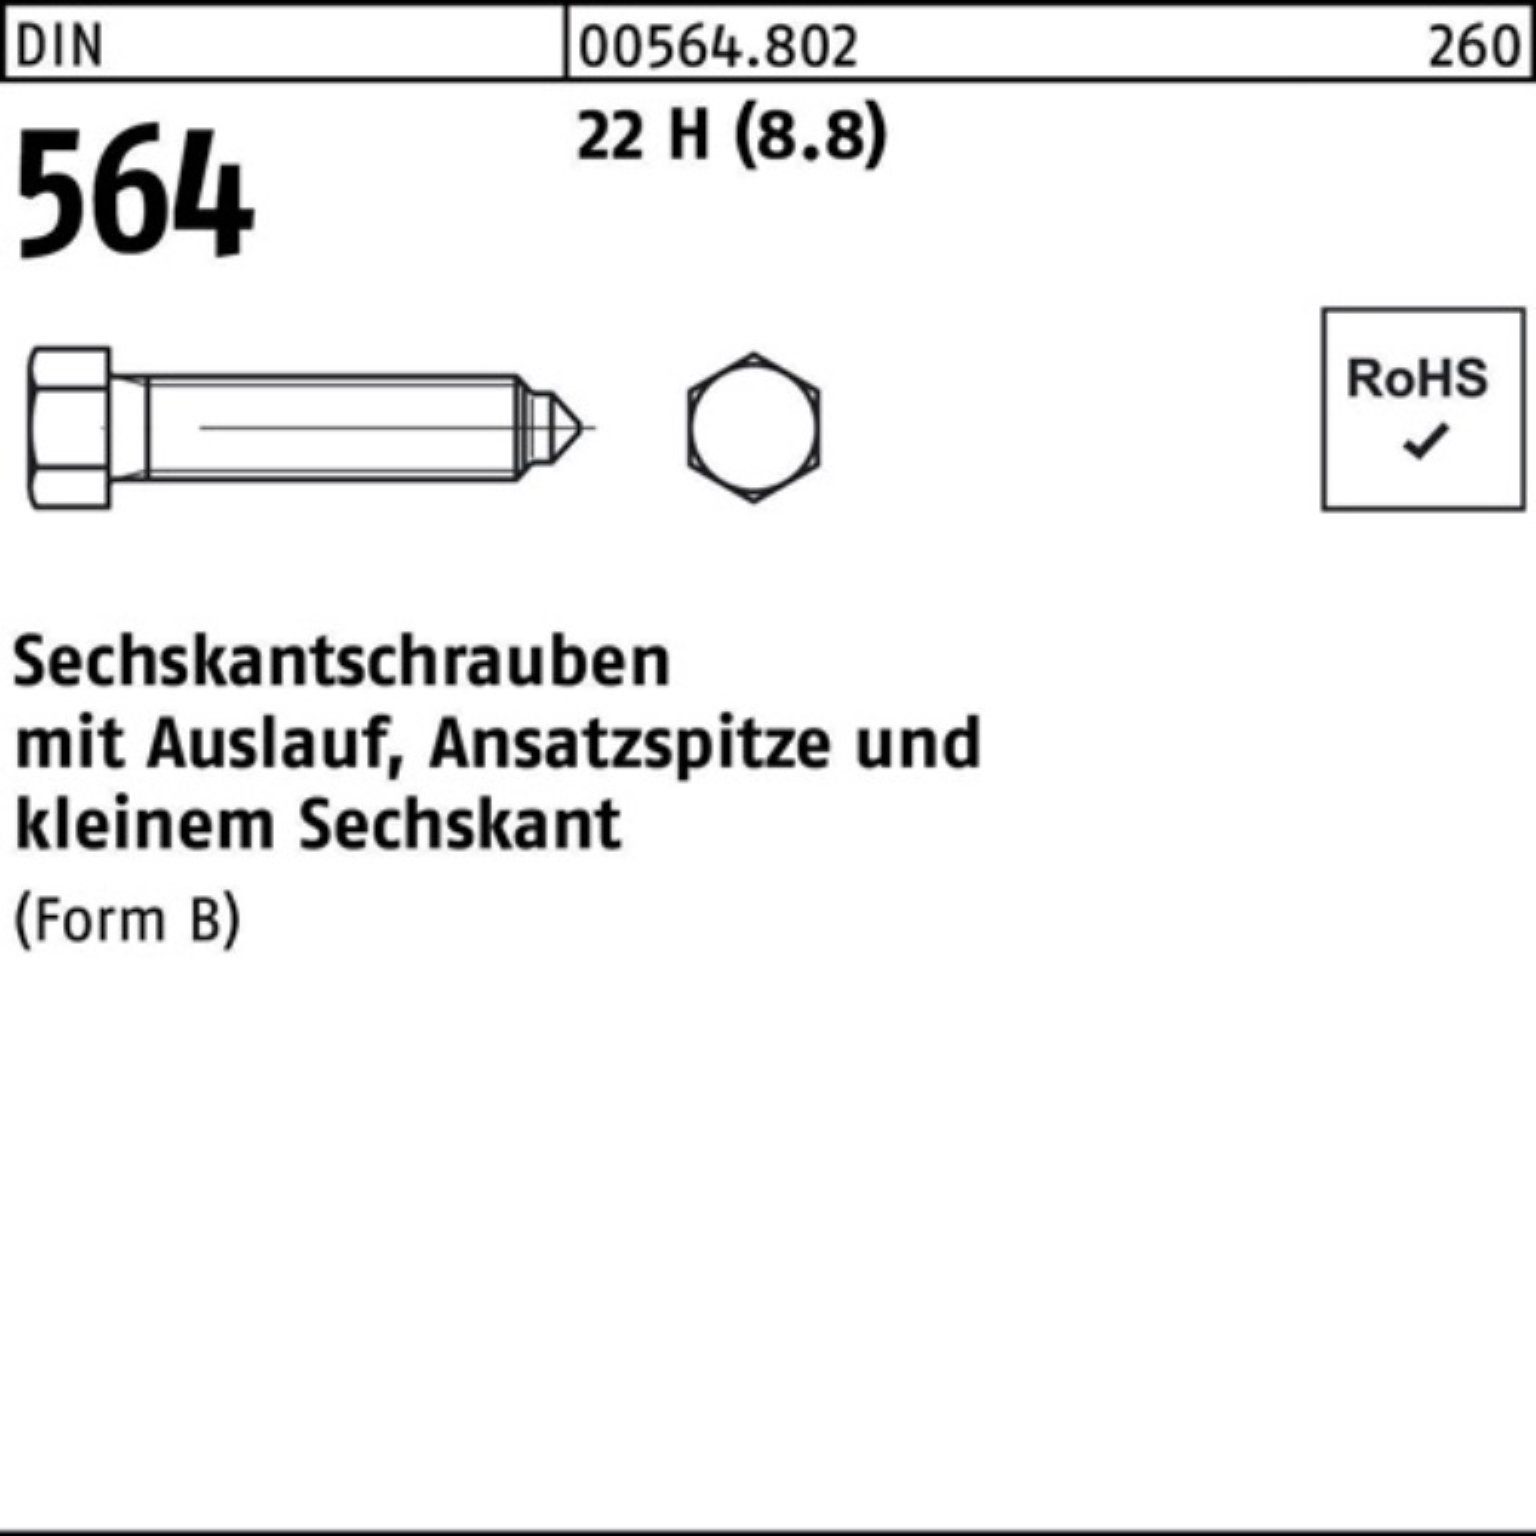 Reyher Sechskantschraube 100er Pack Sechskantschraube DIN 564 Ansatzspitze/Auslauf BM 8x 20 22